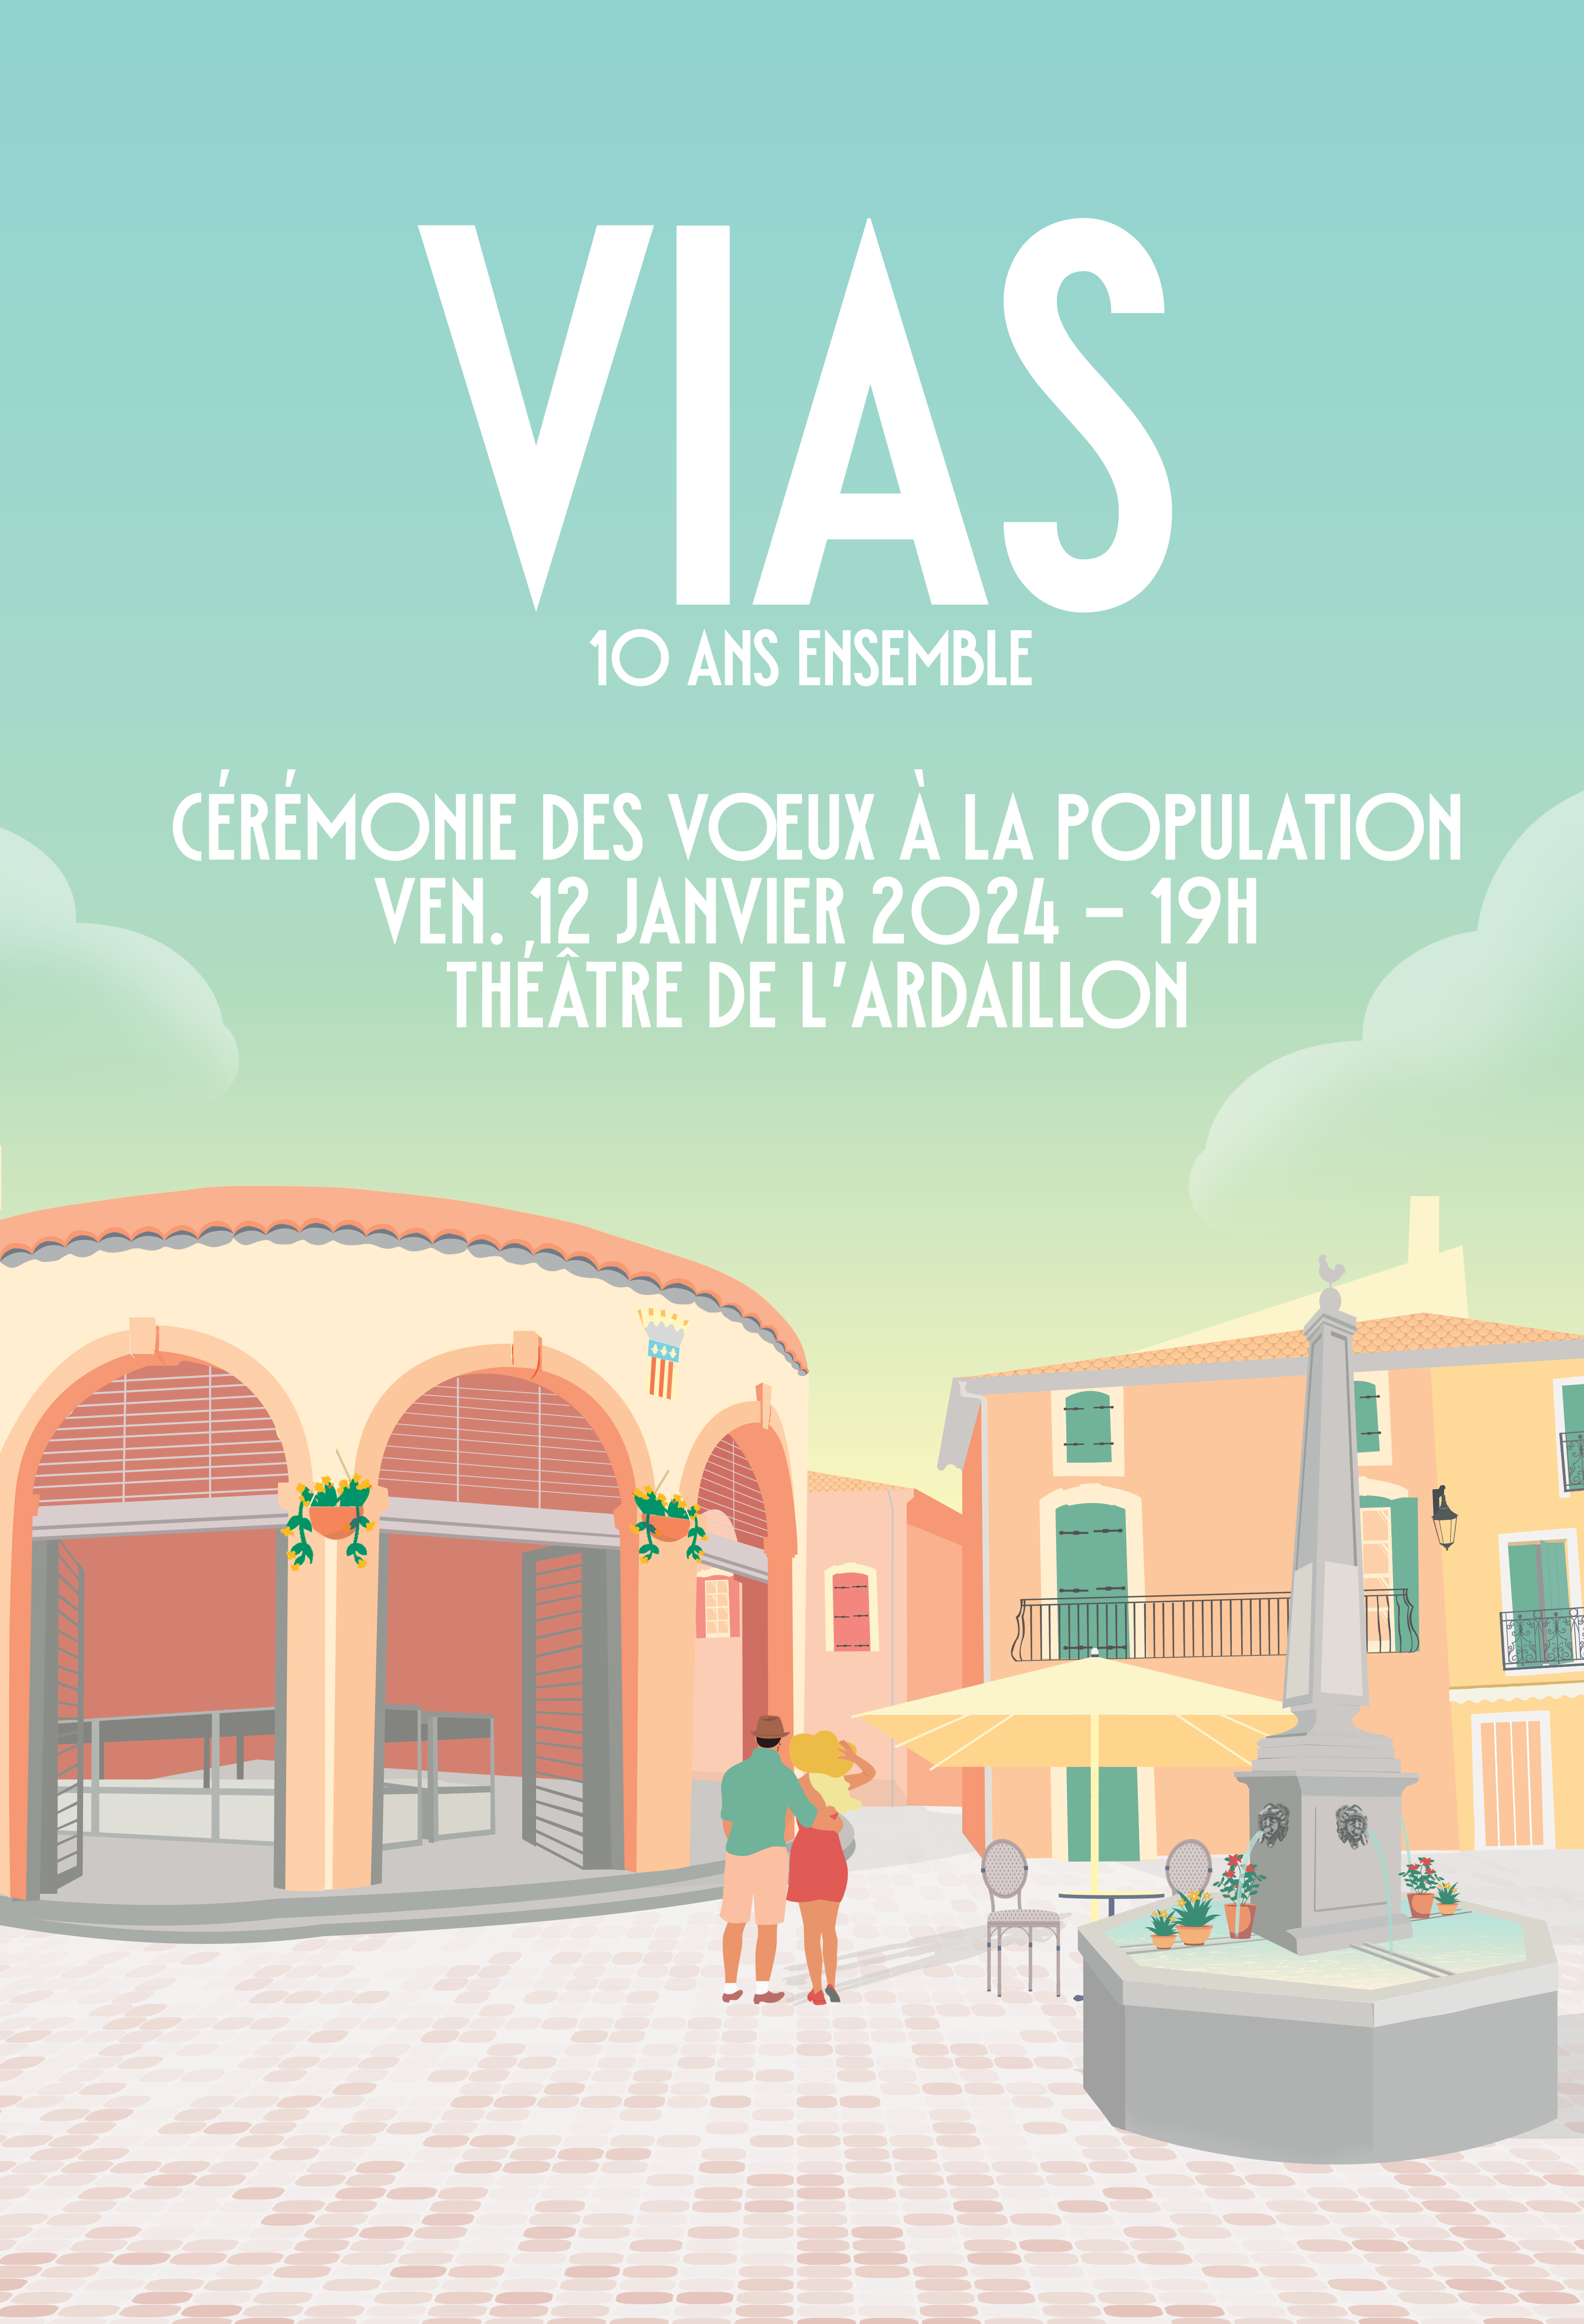 Vias - Cérémonie des voeux de Vias c'est vendredi 12 janvier 2024 !